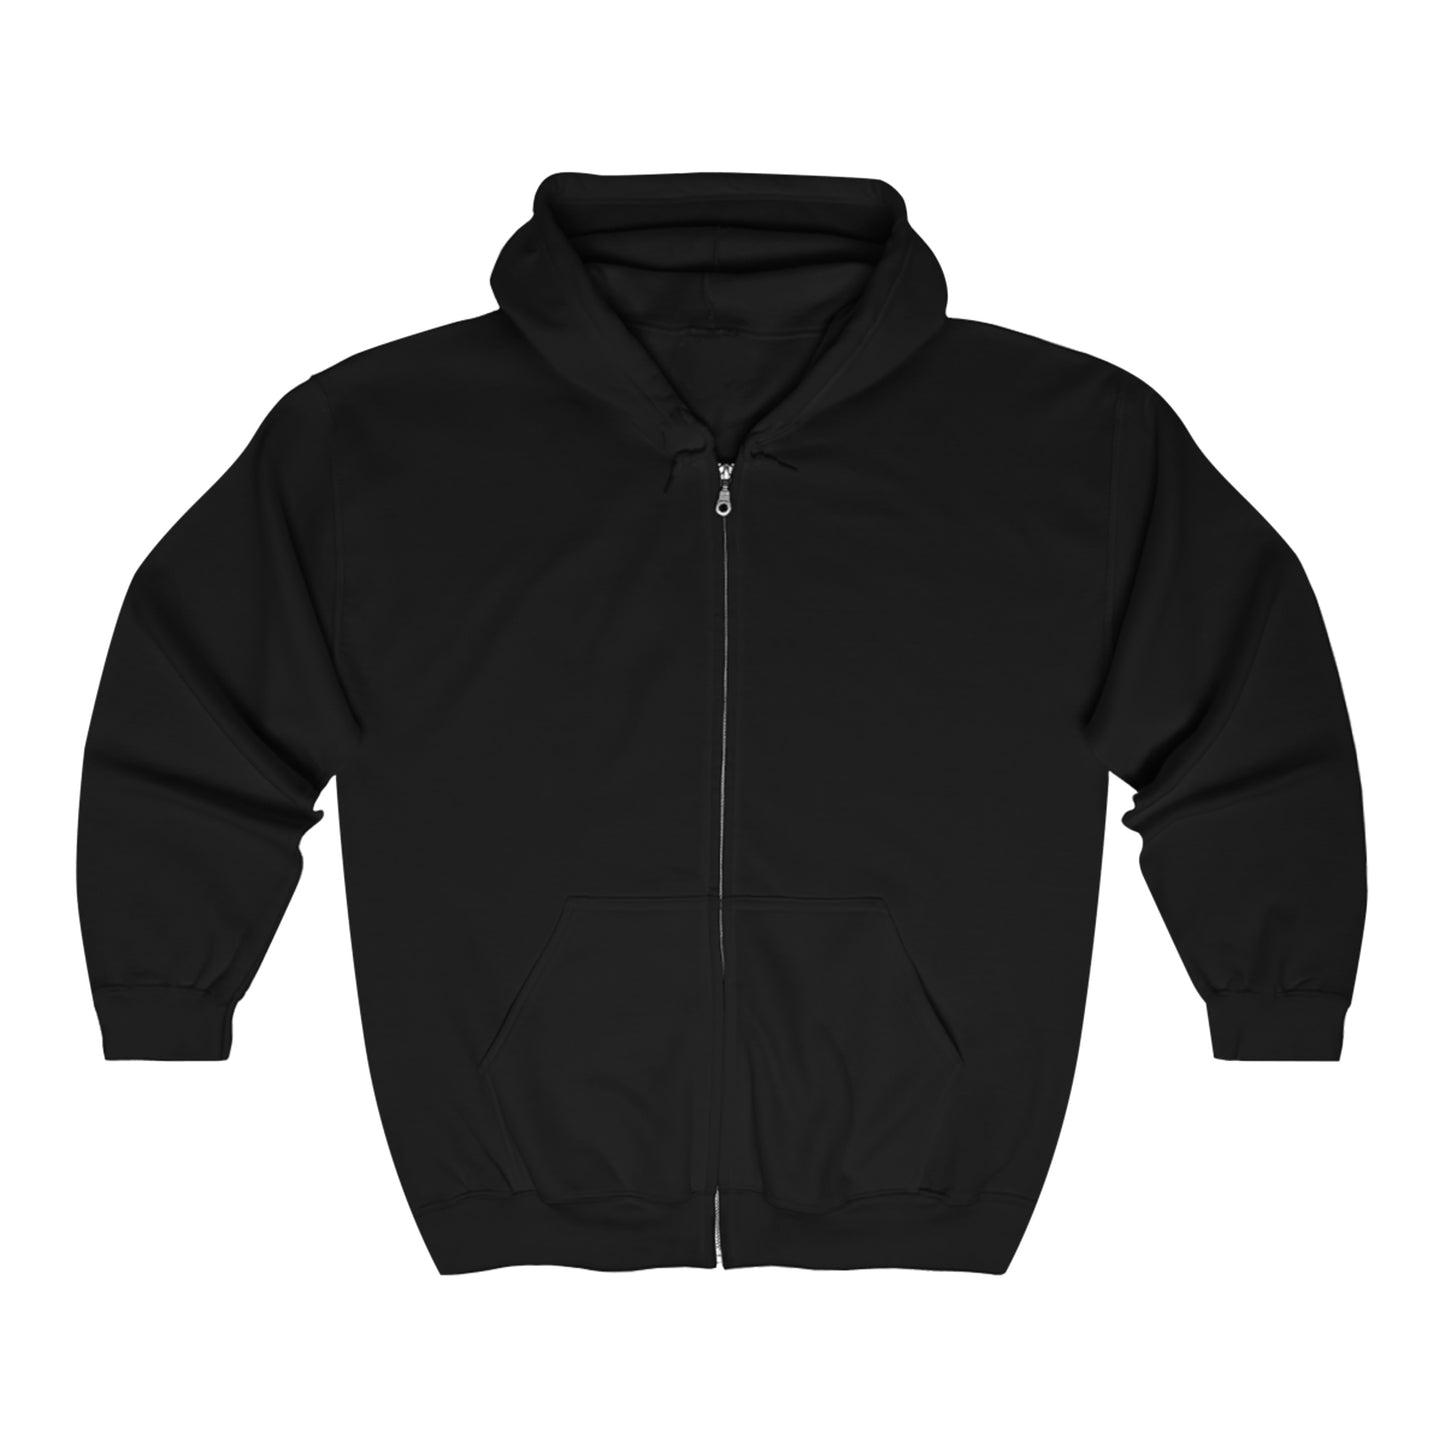 Other Delights - Unisex Heavy Blend™ Full Zip Hooded Sweatshirt